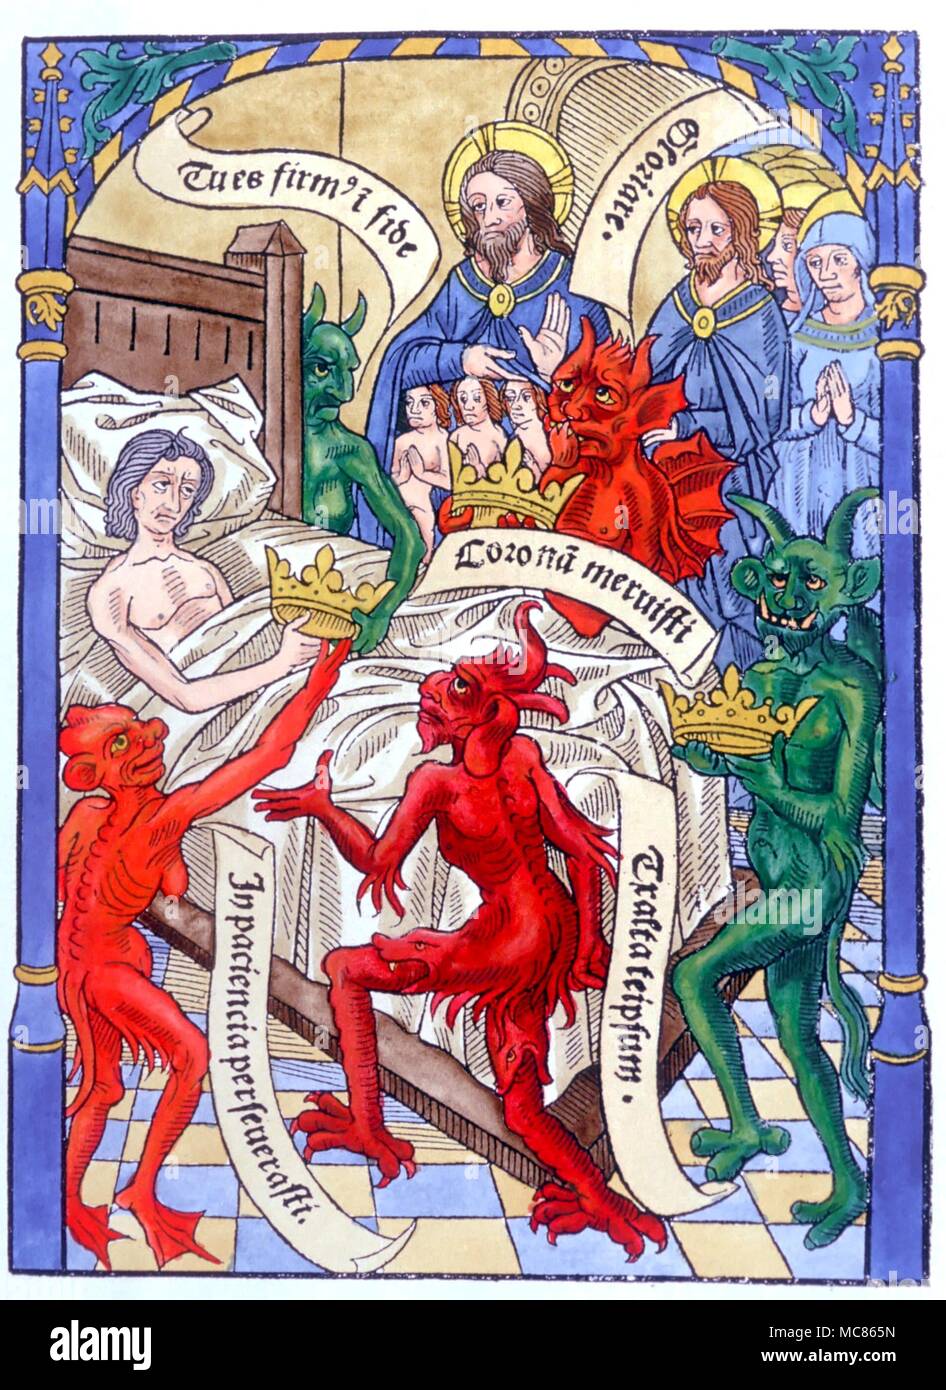 CHRISTIAN - Christus am Sterbebett Holzschnitt zeigt den Dämonen und Engel Attendant am Sterbebett, mit Christus als den Höchsten Herrn. Von einem 'Ars moriendi Bene" von C. 1500 Stockfoto